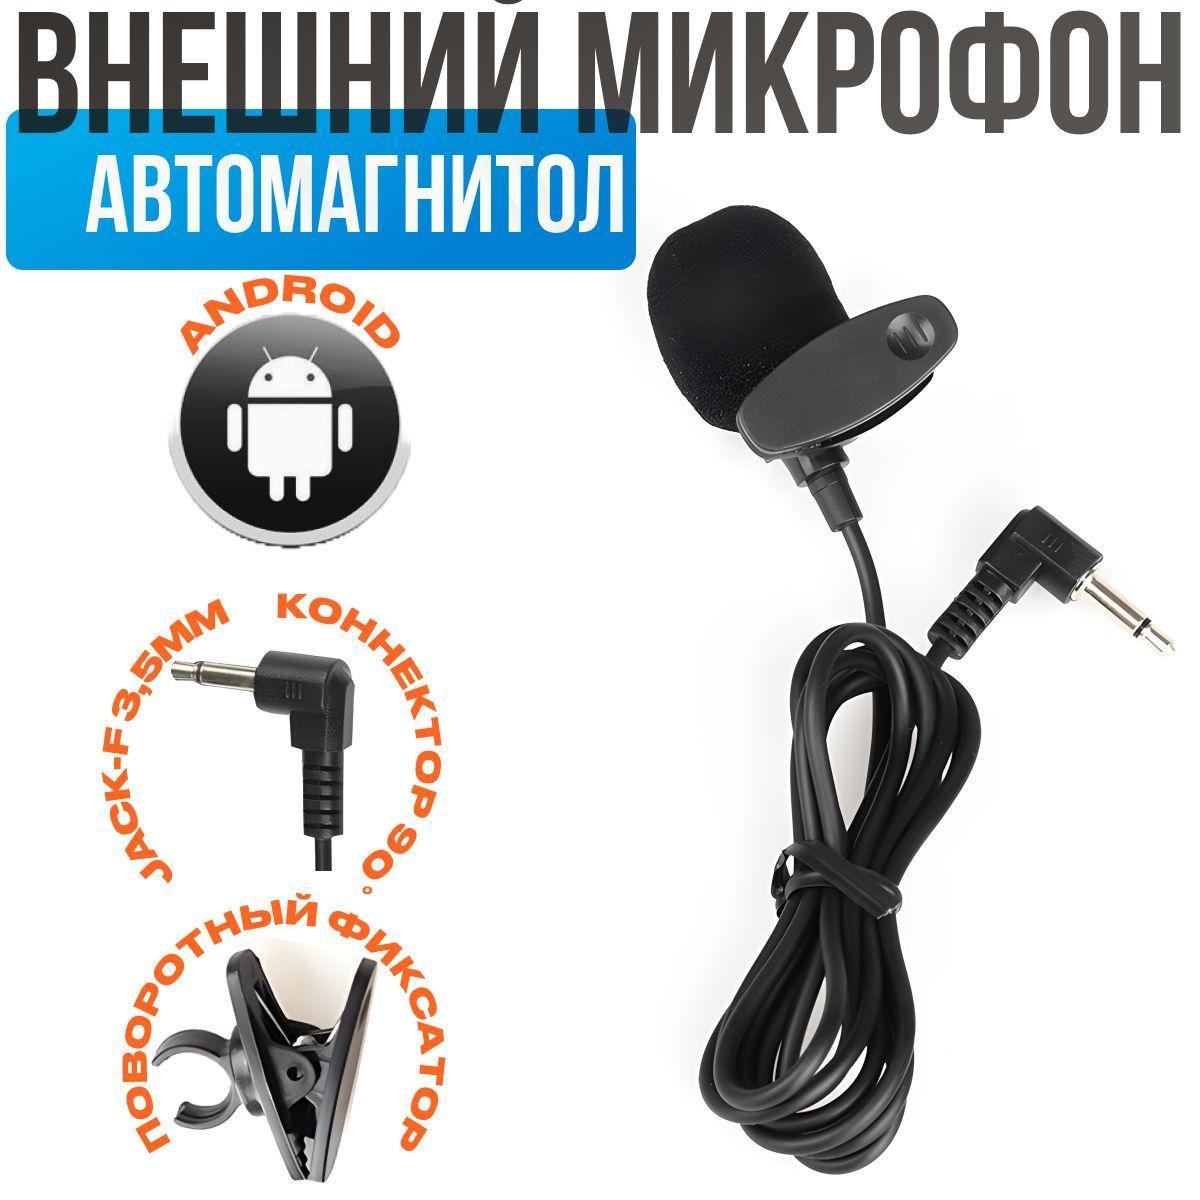 KDOM Громкая связь автомобильная Петличный моно-микрофон, автомобильный микрофон, микрофон для автомагнитолы для магнитолы на андройд android, teyes/_черный